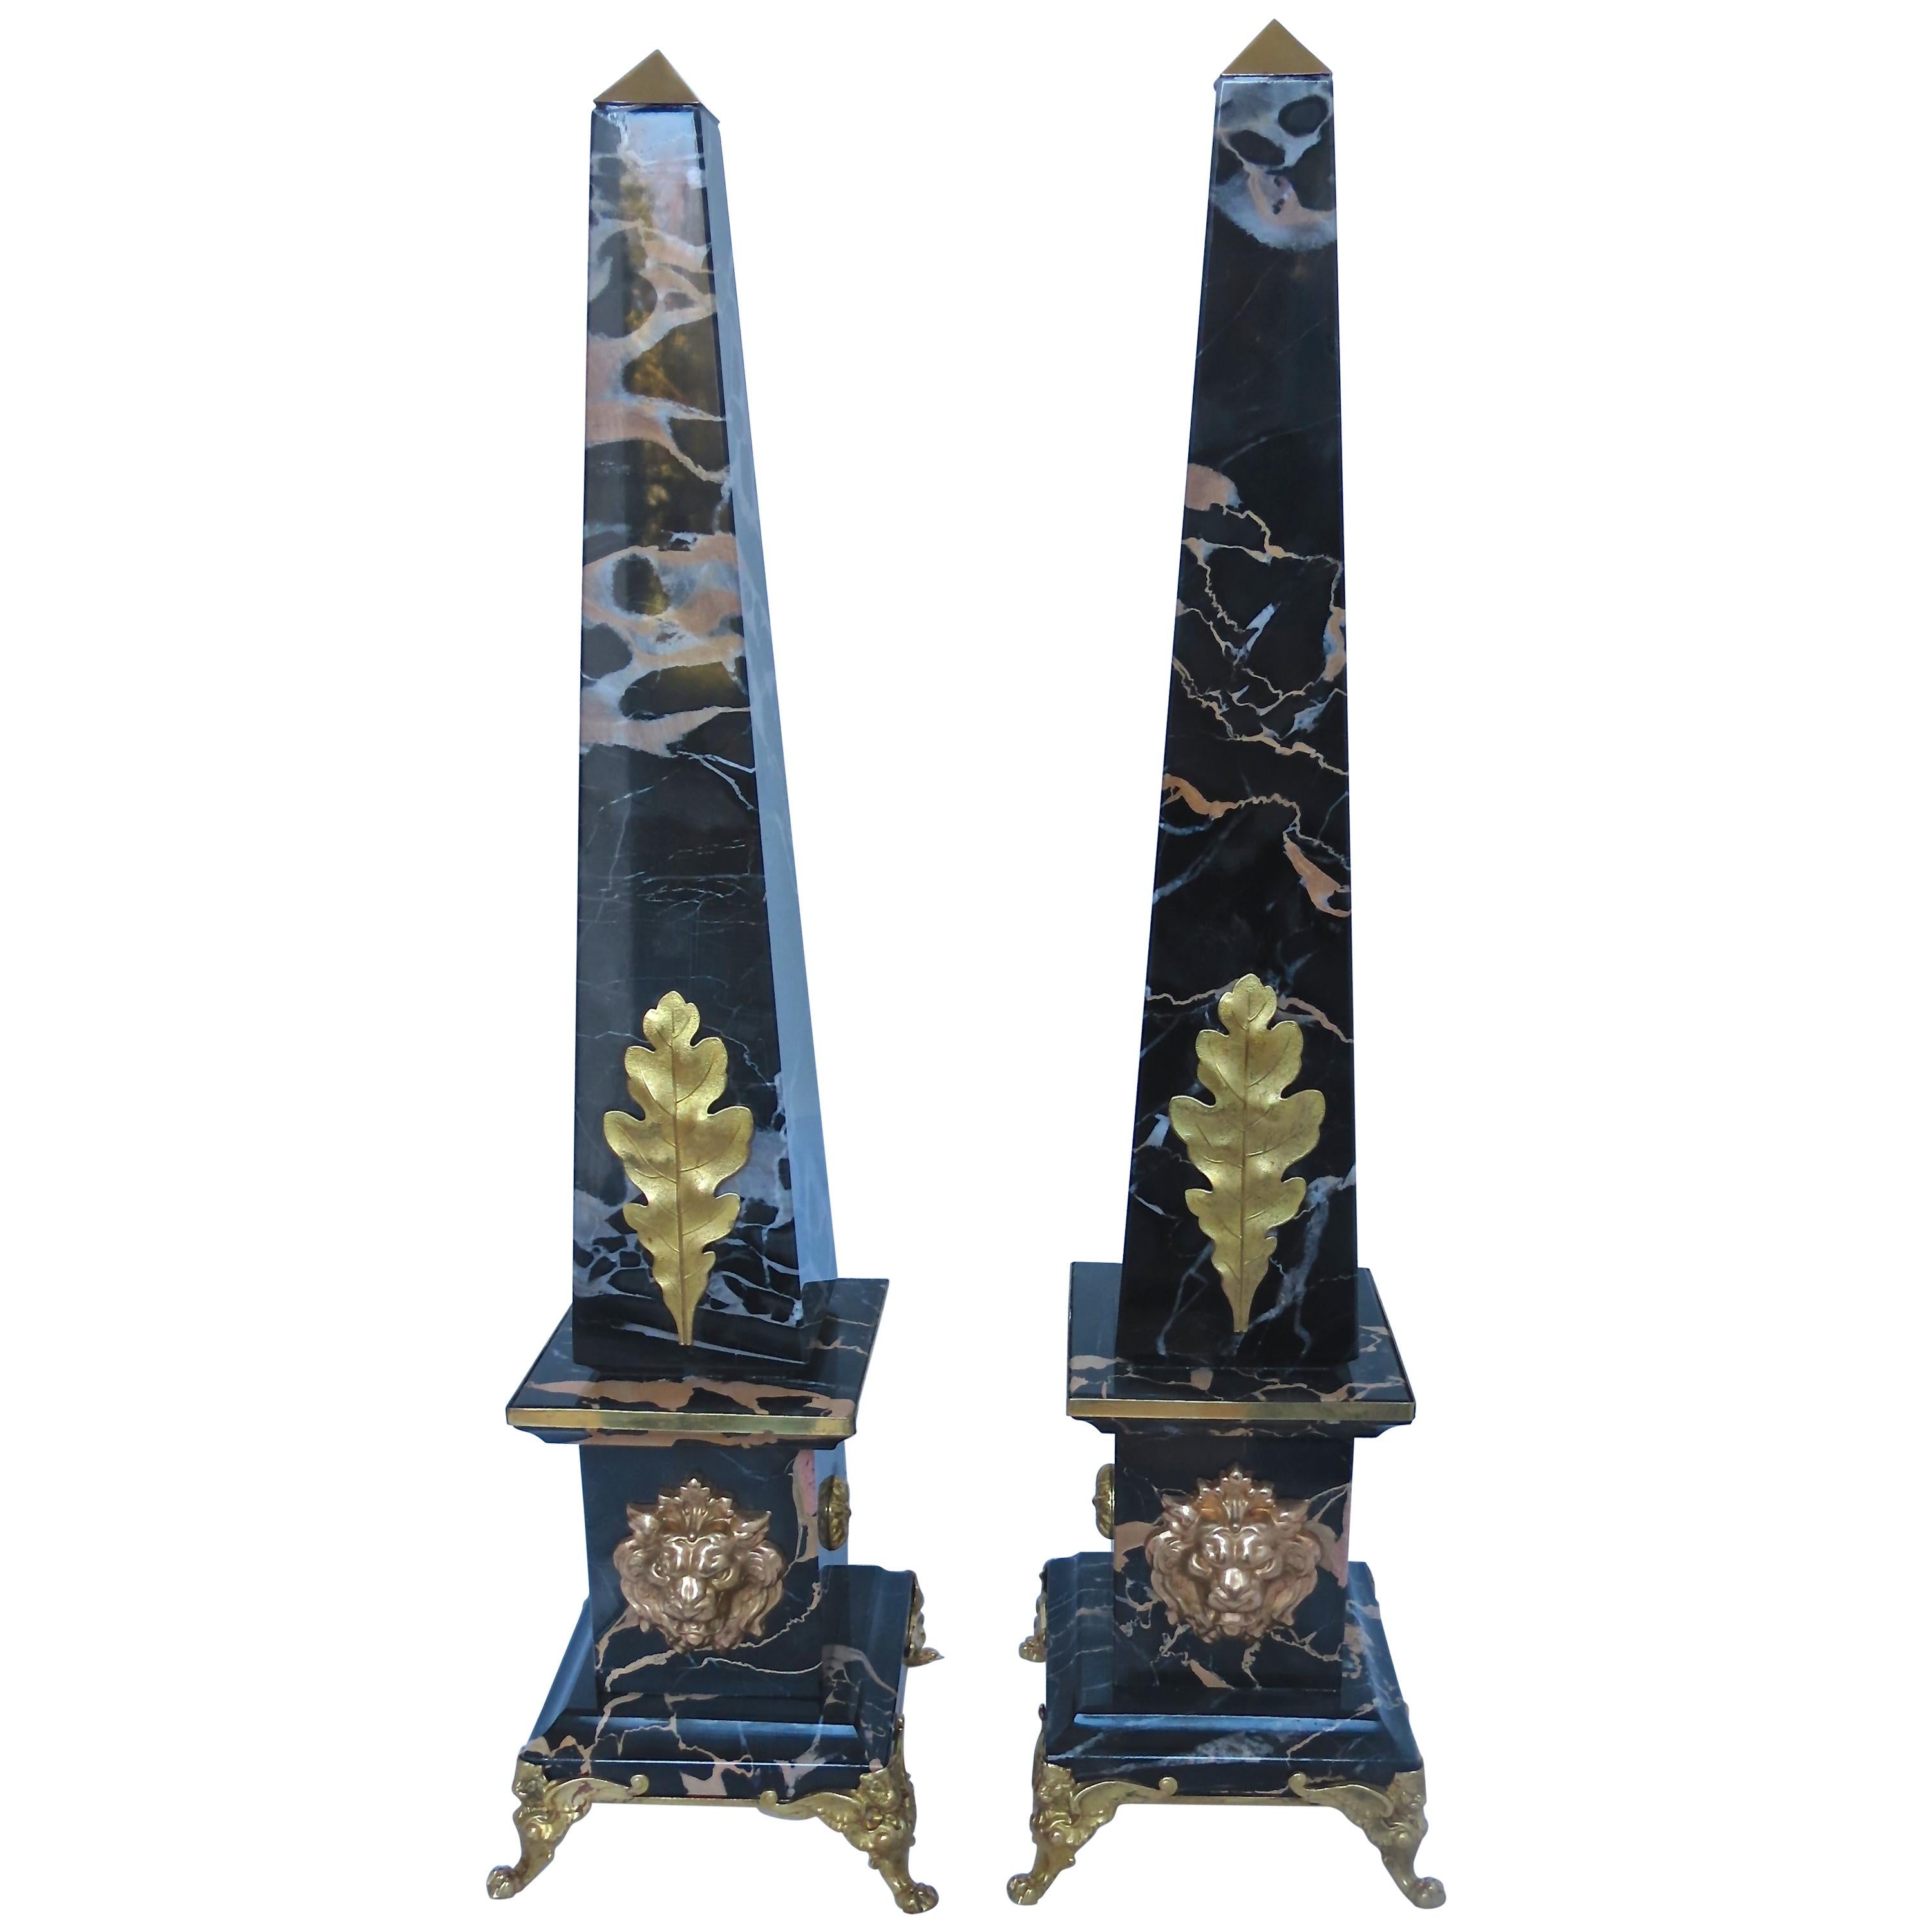 Paire d'obélisques Portoro en marbre et bronze « Lion d'or », édition limitée, 2018